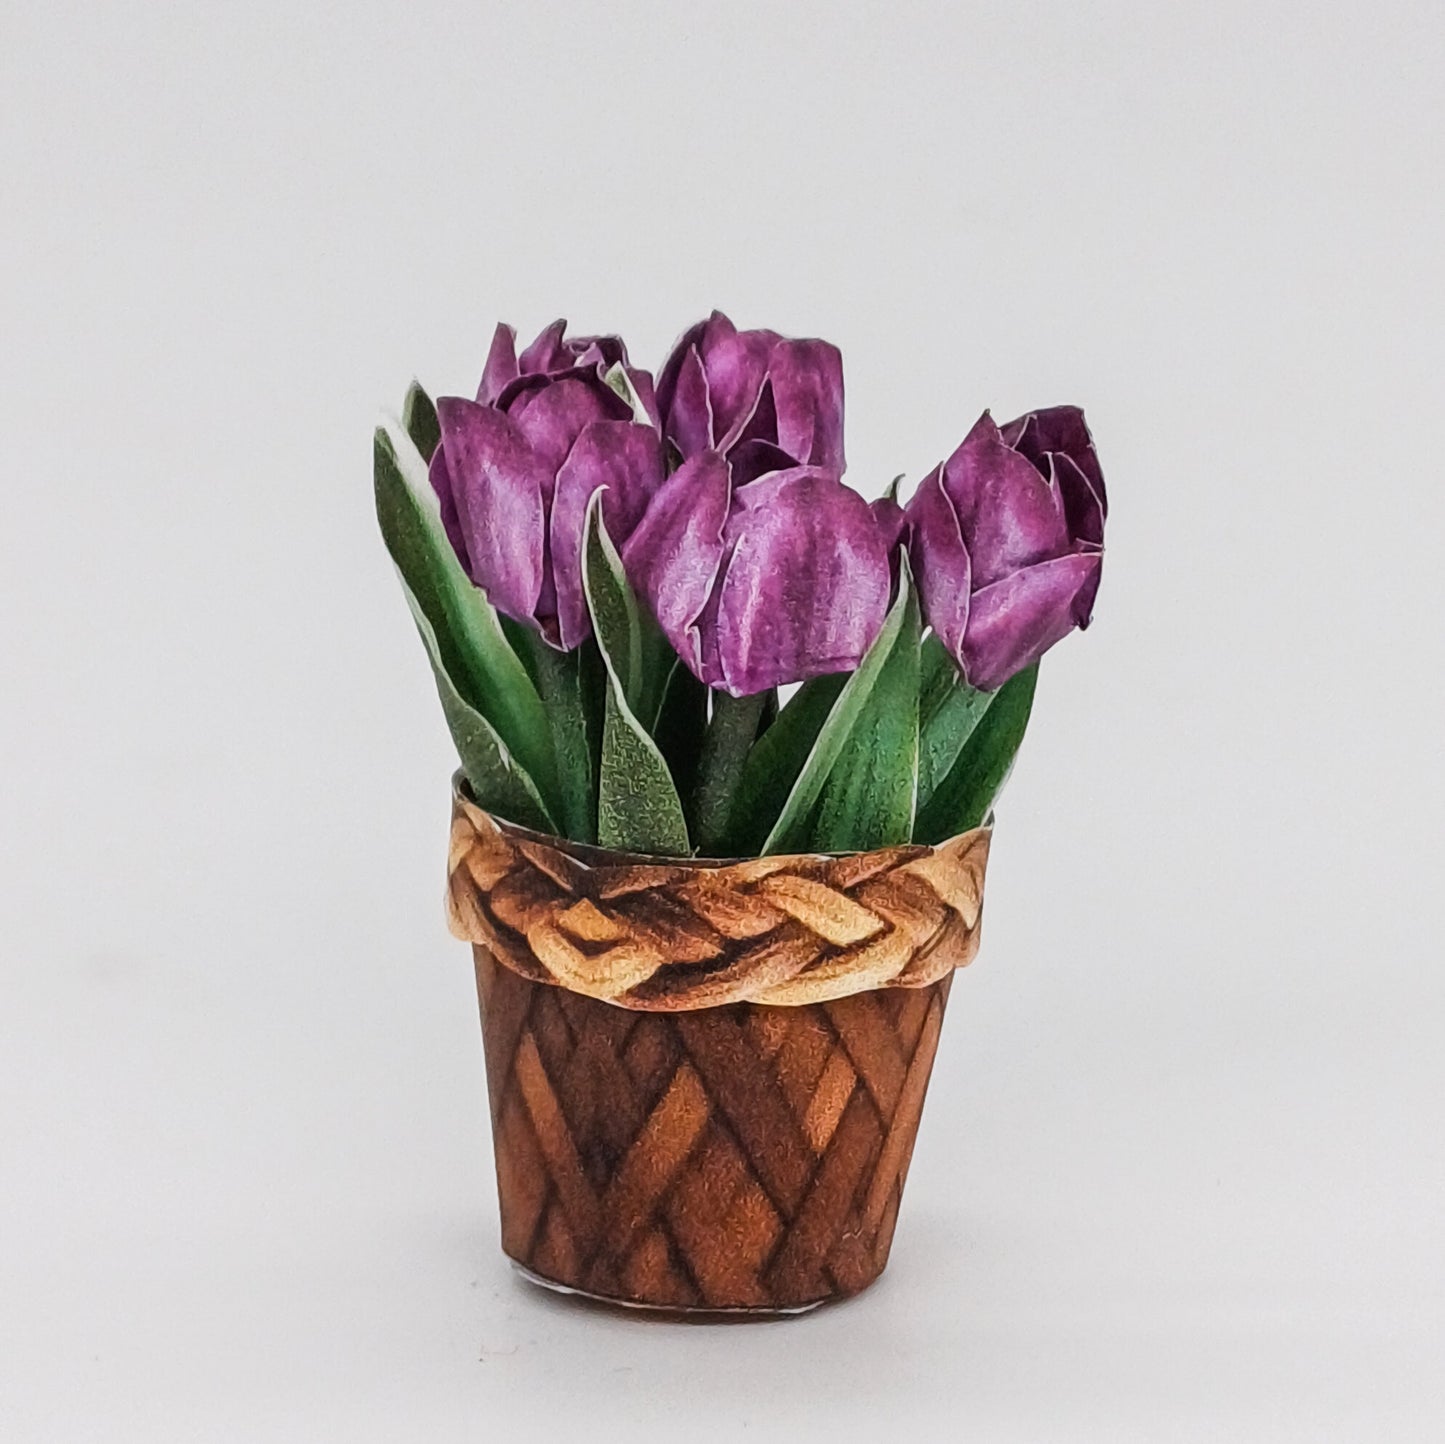 Miniatur Tulpen im Maßstab 1:12 zum Drucken und Basteln